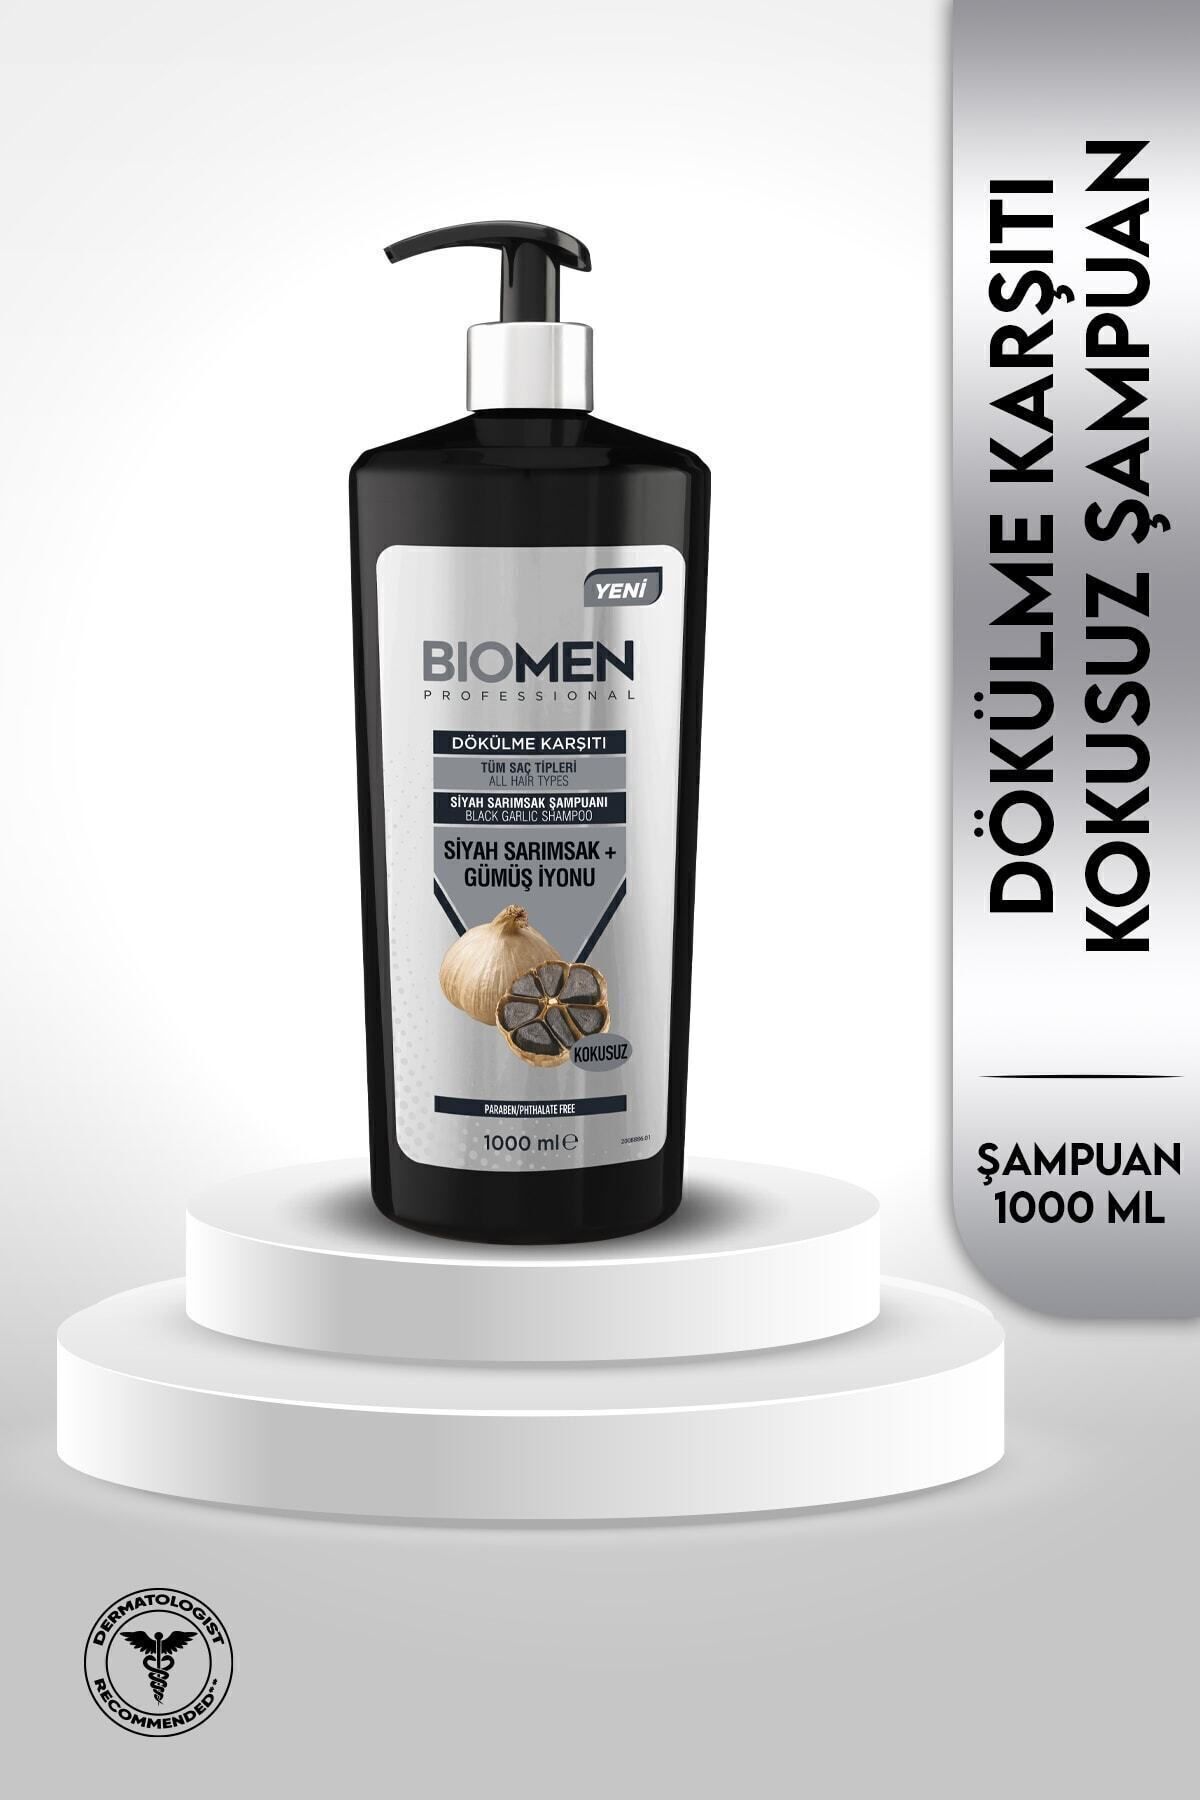 Biomen Tüm Saç Tipleri İçin Dökülme Karşıtı Siyah Sarımsak ve Gümüş İyonu İçeren Organik Şampuan